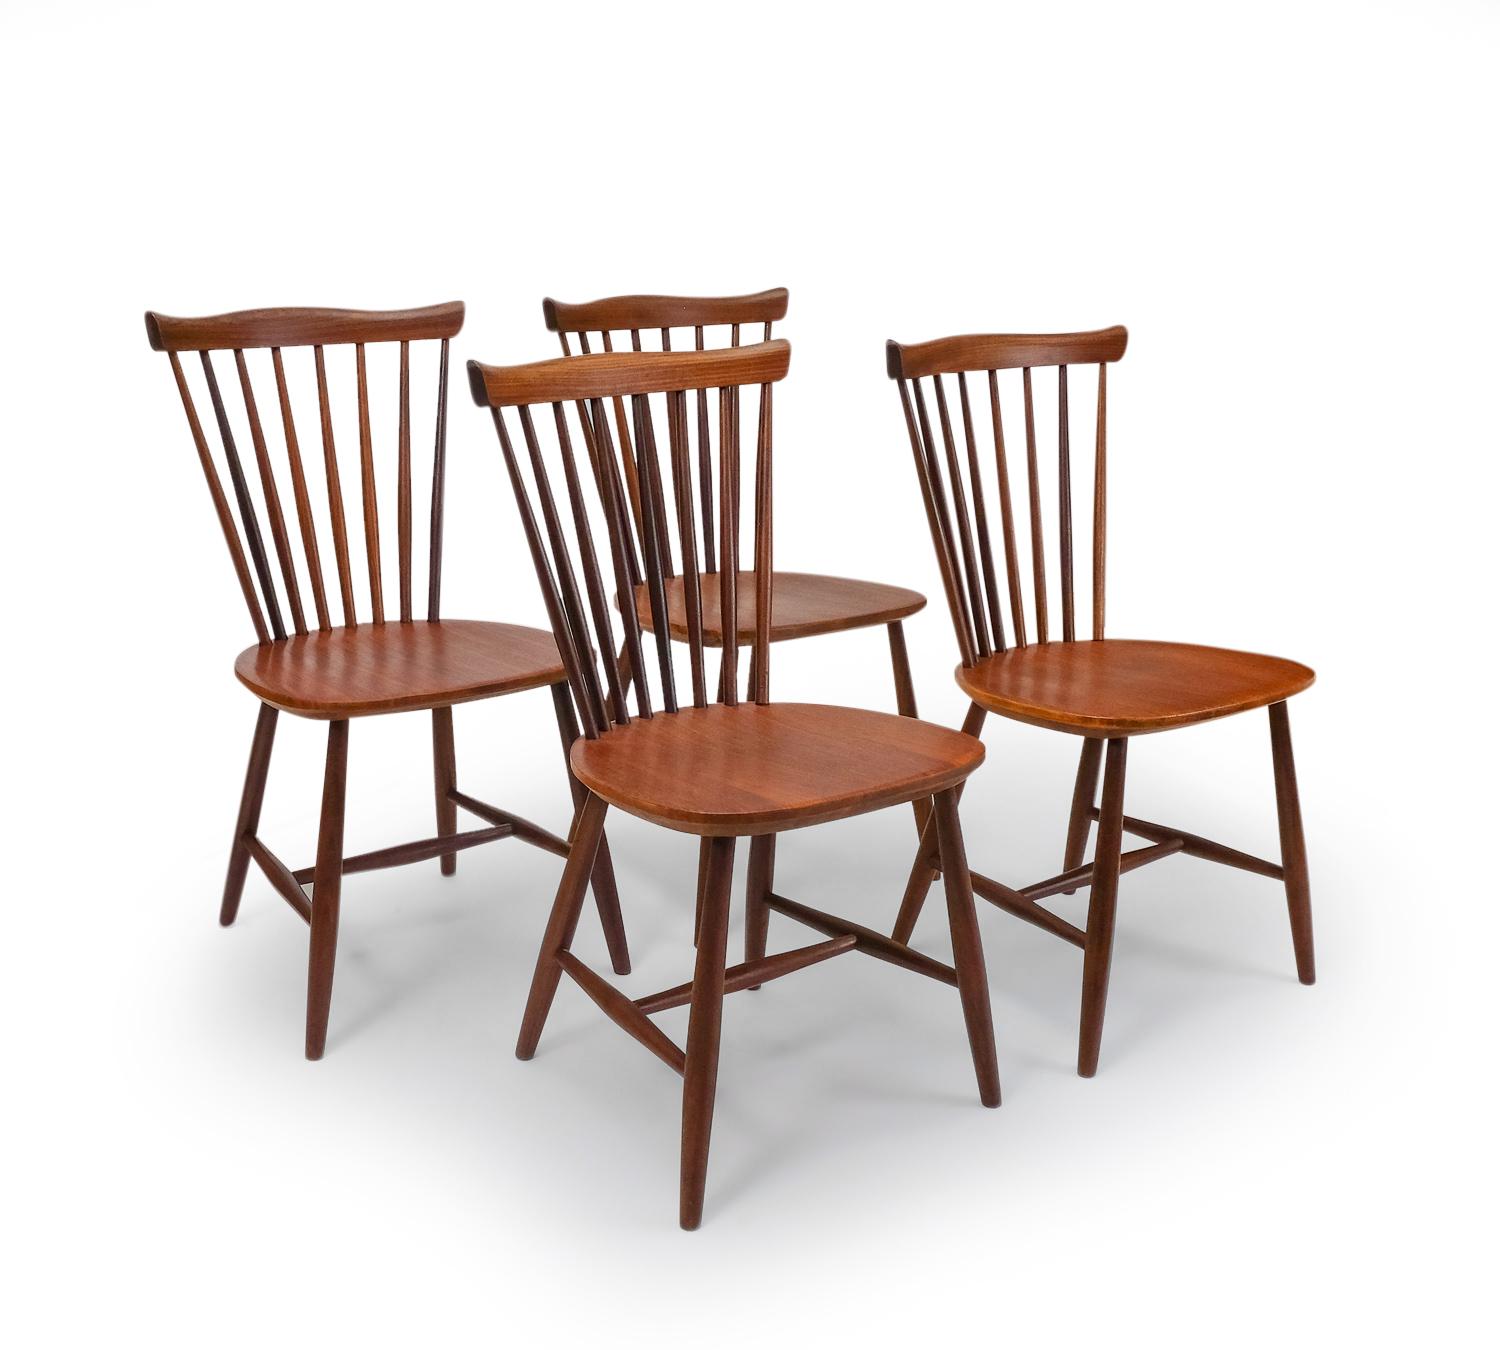 Von Yngve Ekstrom entworfene Stühle, die in den 1960er Jahren von Pastoe in den Niederlanden verkauft wurden.

Yngve Ekström absolvierte wie viele seiner Kollegen eine Ausbildung zum Architekten. Was ihn jedoch auszeichnete, war sein Wissen über